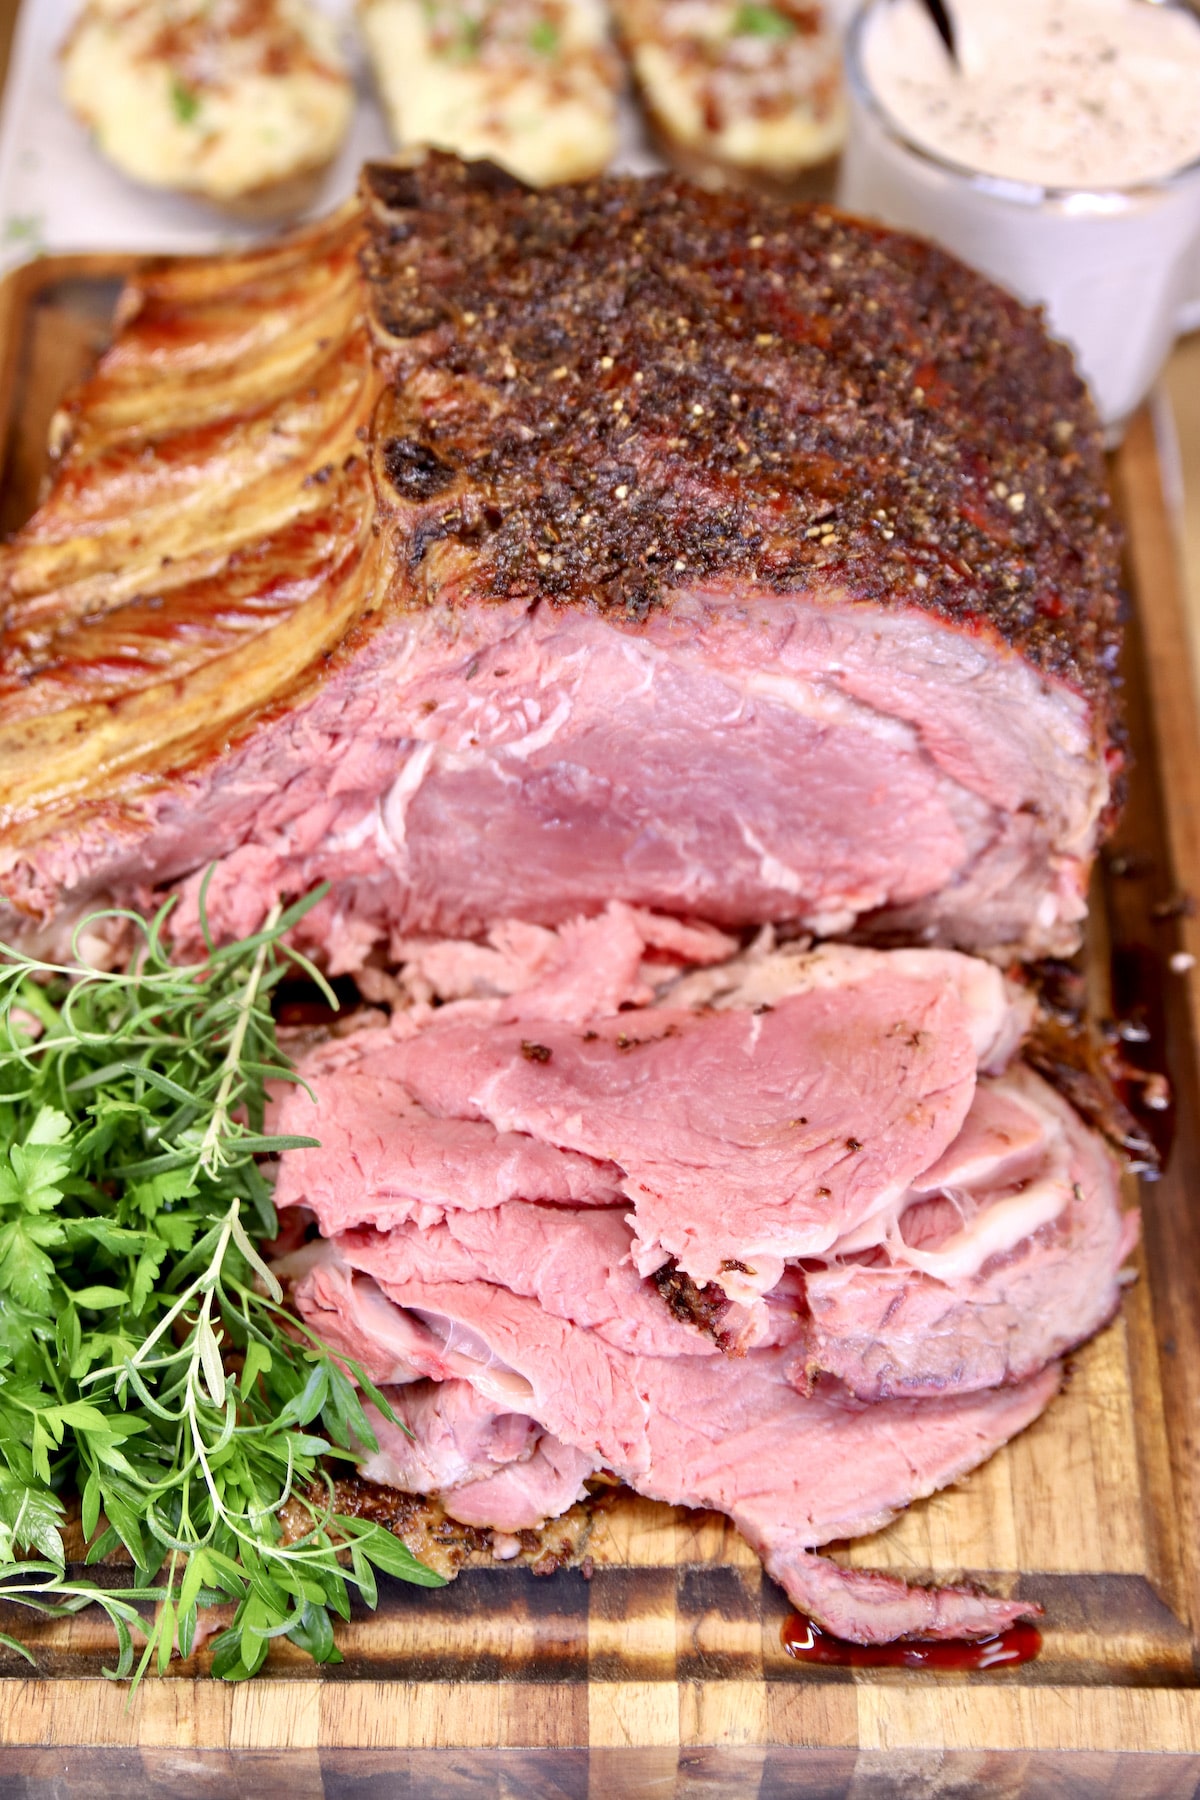 sliced standing rib roast on cutting board with fresh herb garnish.